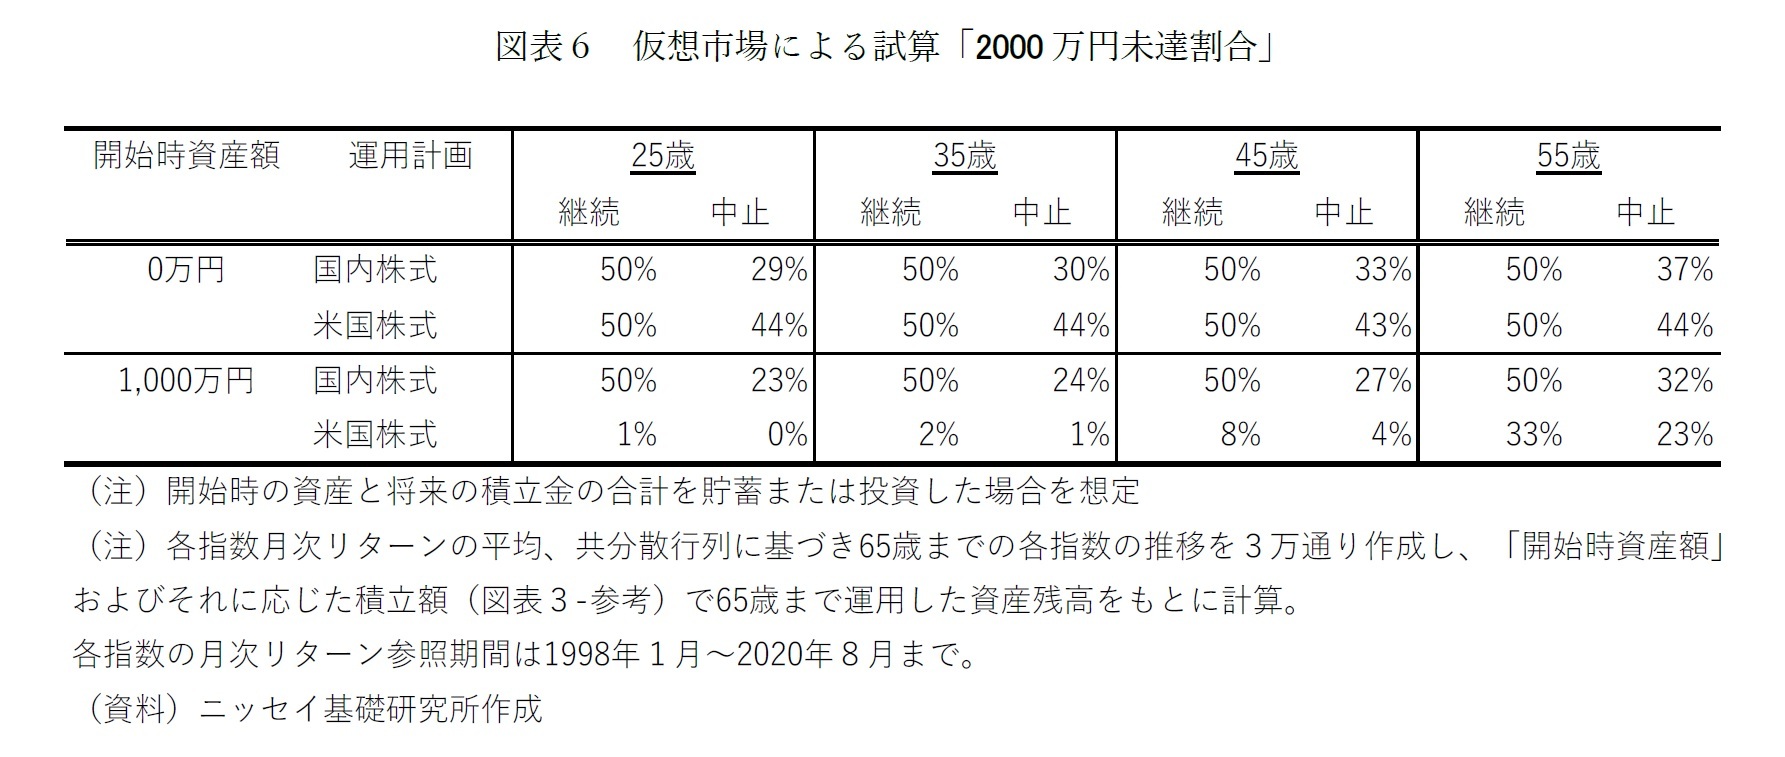 図表６ 仮想市場による試算「2000 万円未達割合」